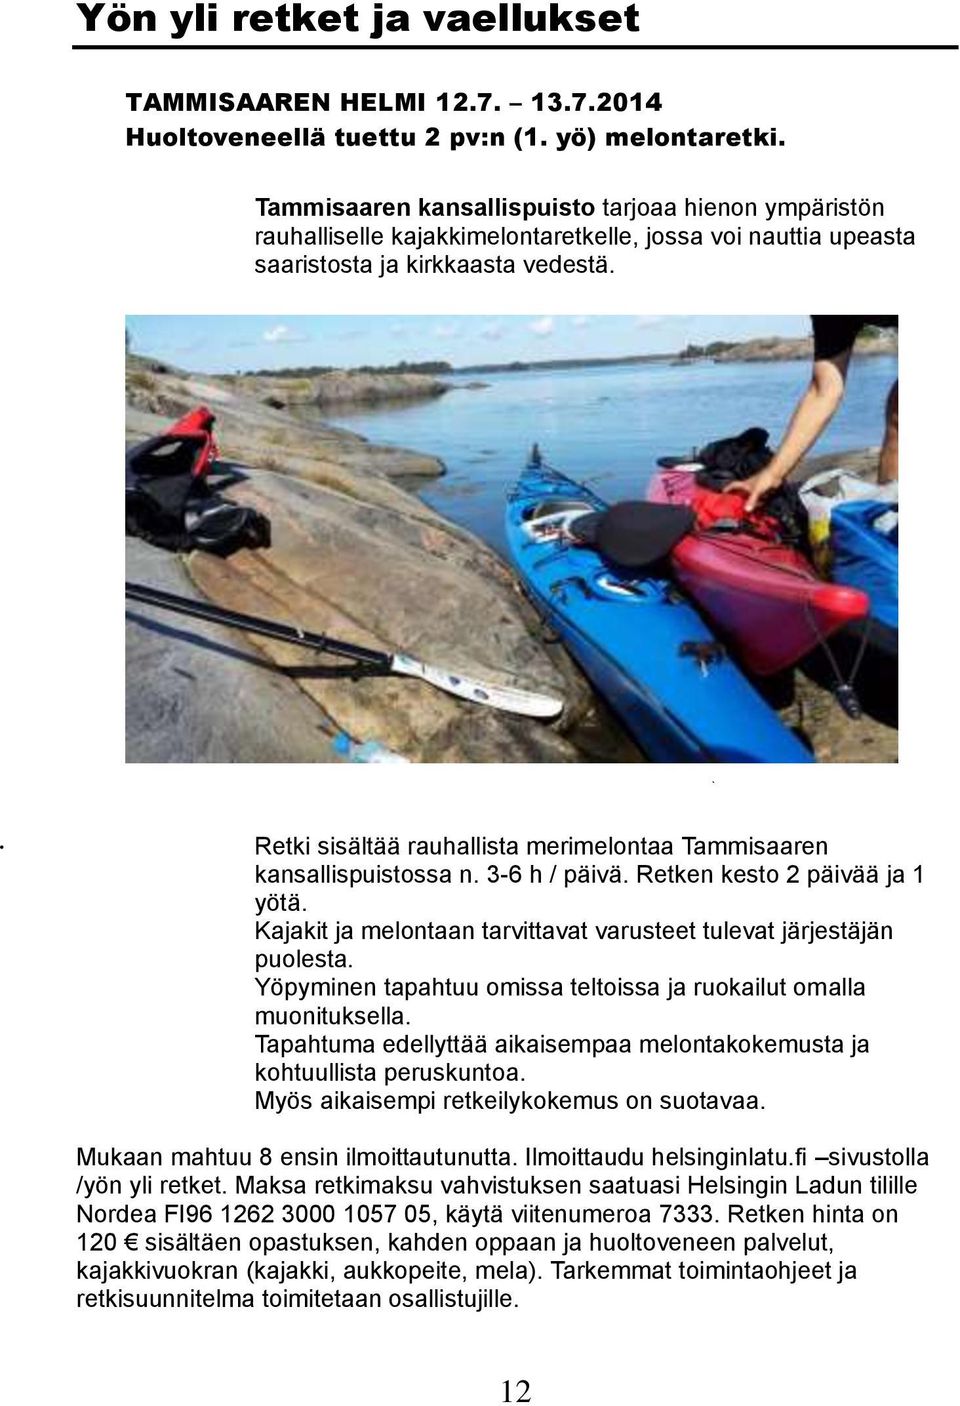 Retki sisältää rauhallista merimelontaa Tammisaaren kansallispuistossa n. 3-6 h / päivä. Retken kesto 2 päivää ja 1 yötä. Kajakit ja melontaan tarvittavat varusteet tulevat järjestäjän puolesta.